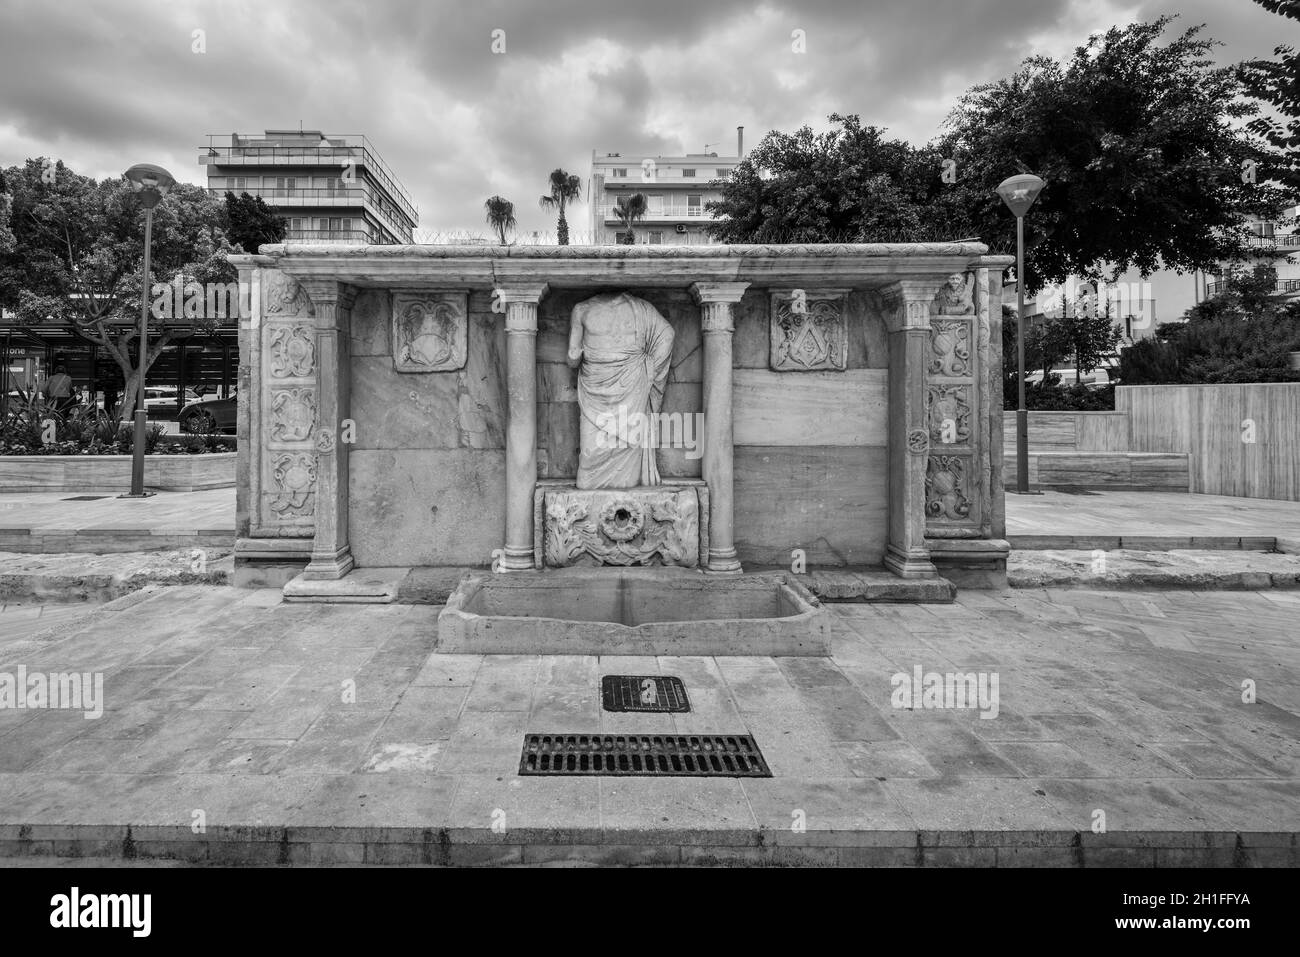 Heraklion, Kreta, Griechenland - 2 November, 2019: Stein alten Venezianischen Bembo Brunnen in dem Kornarou Square, Heraklion, Kreta, Griechenland. Antike sculpt Stockfoto